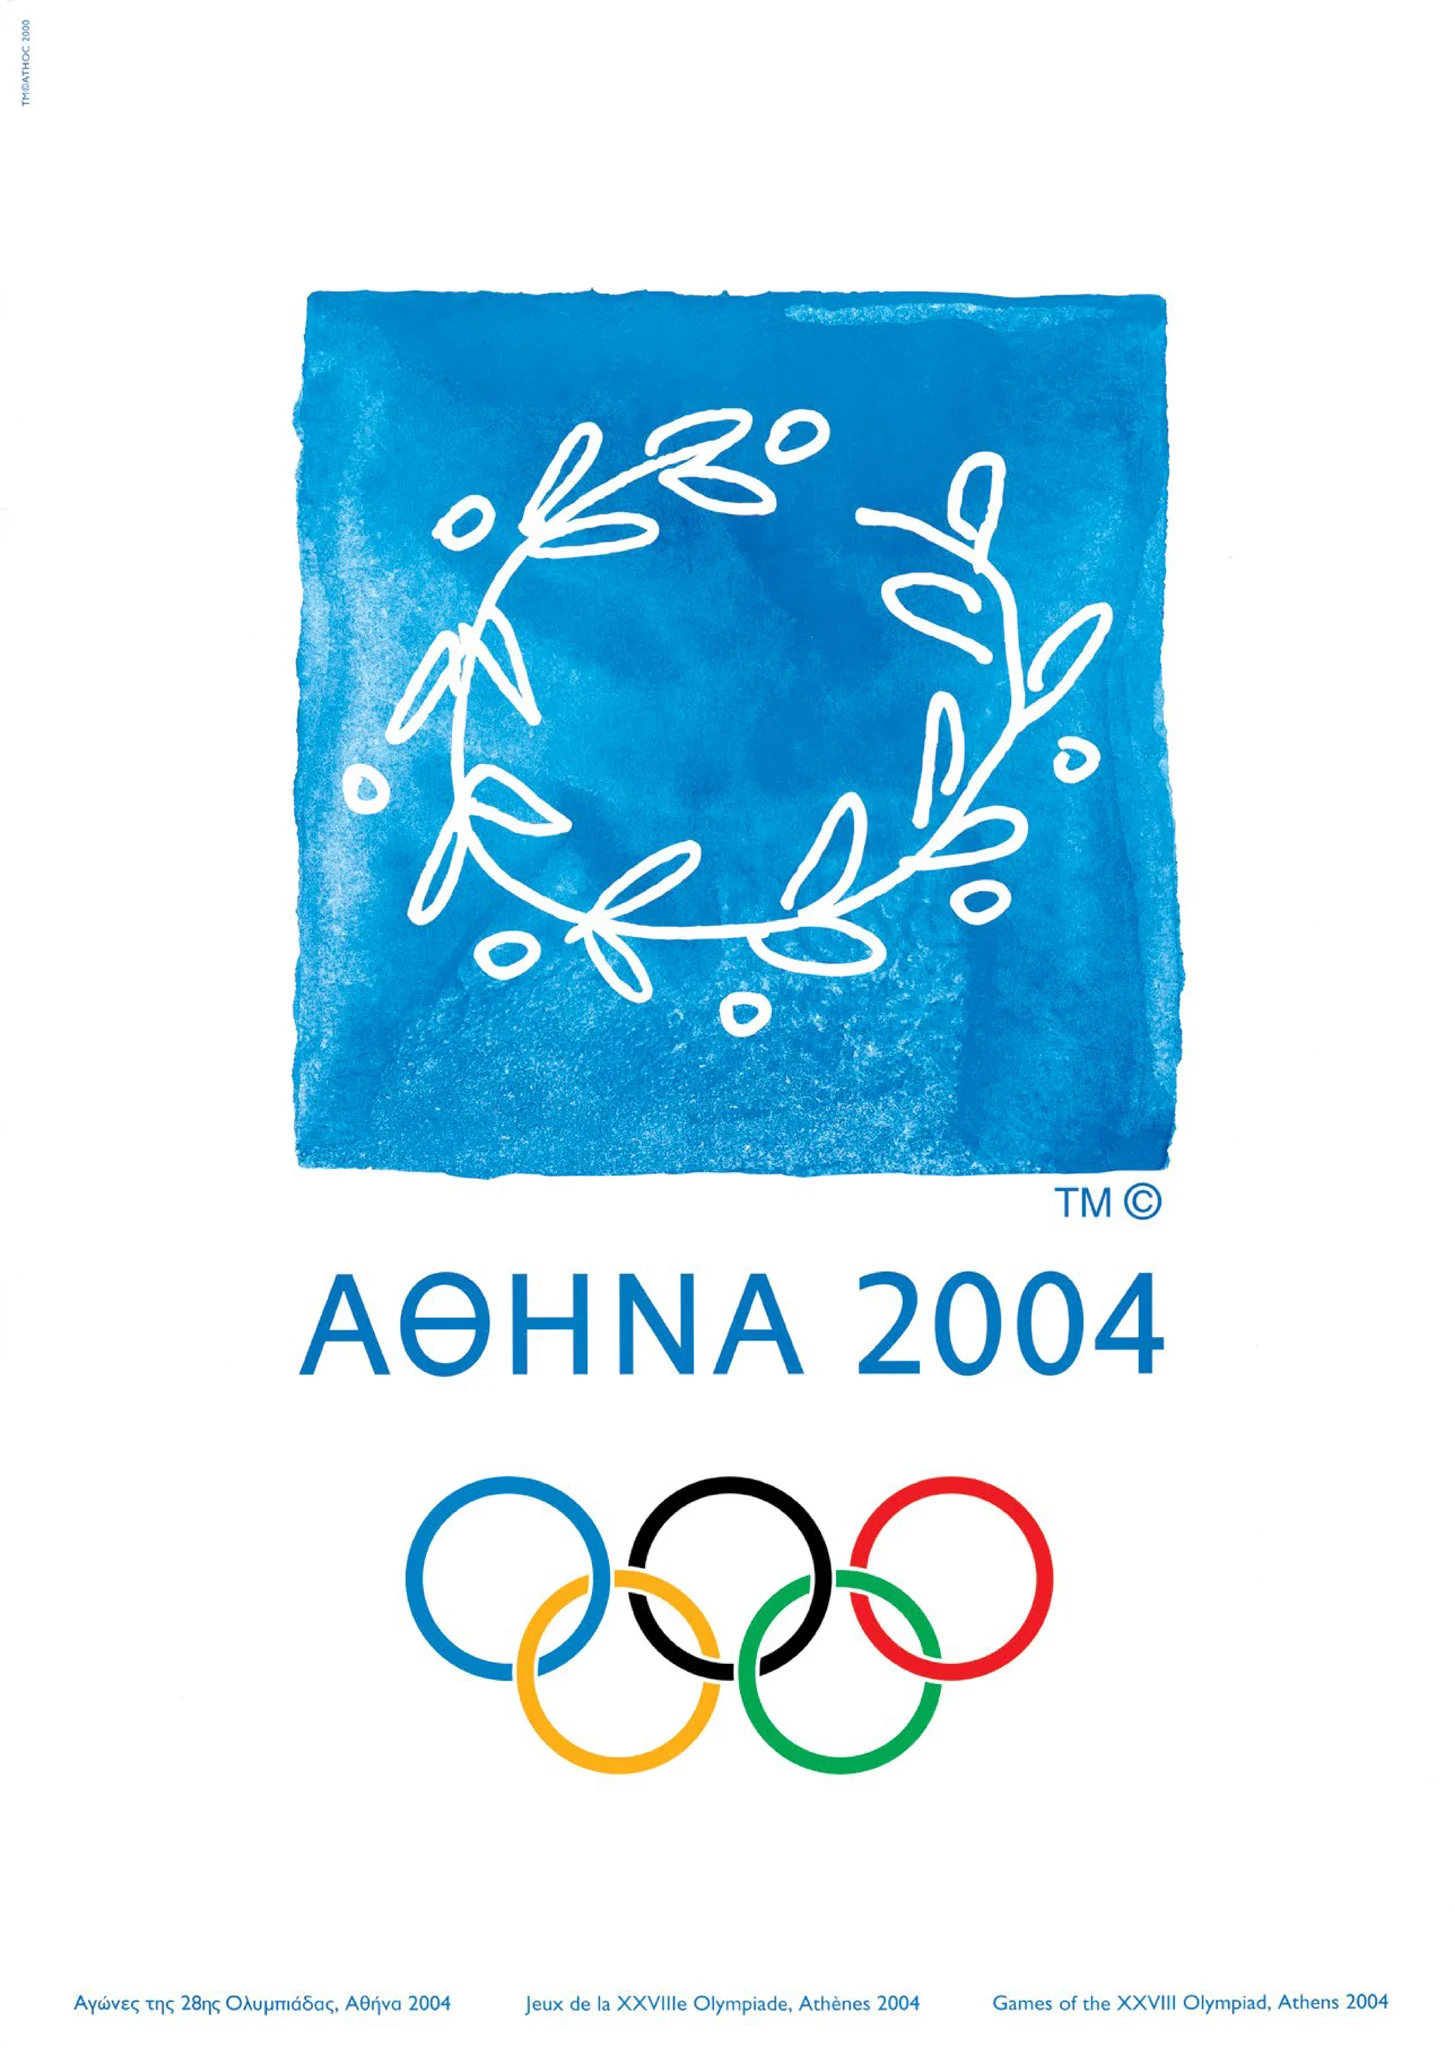 Pôster oficial da Olimpíada de Atenas 2004'